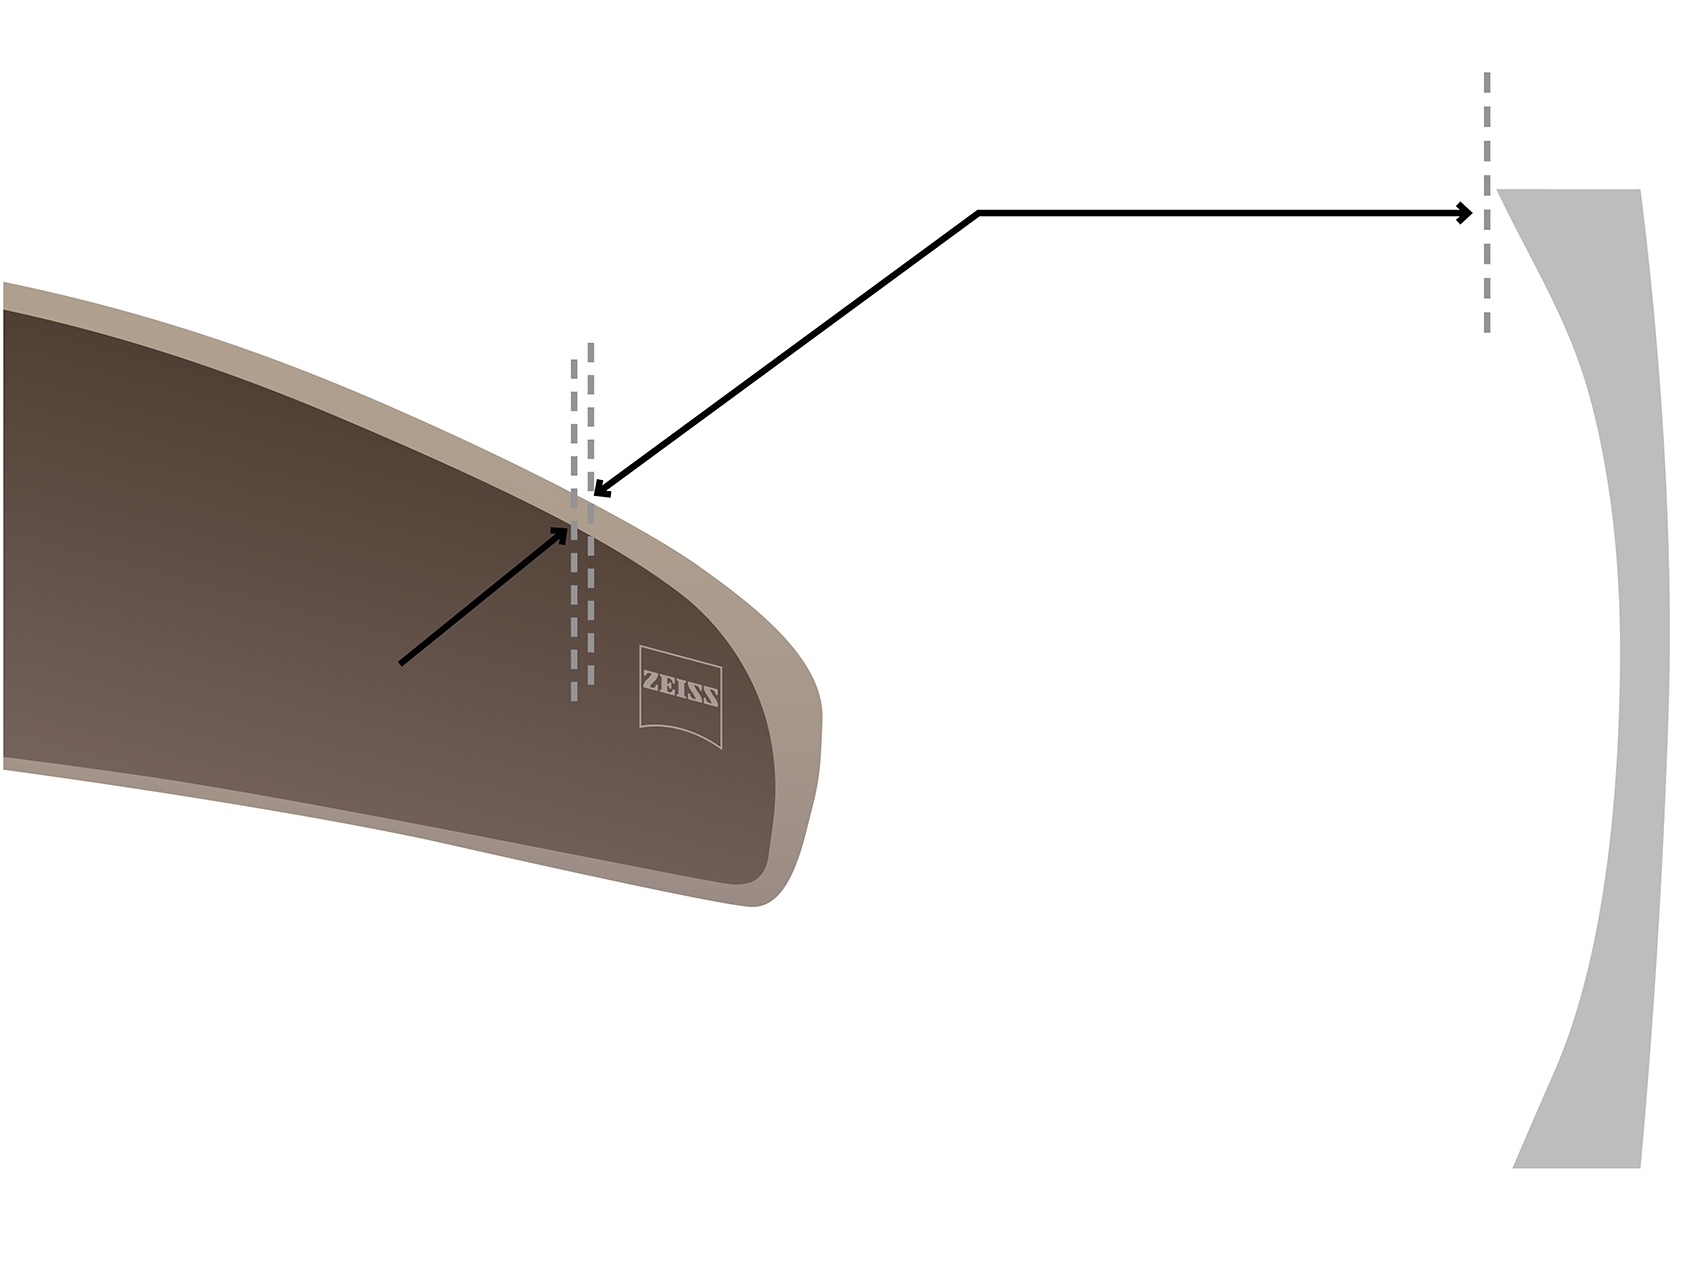 Збільшене зображення вигнутих лінз ZEISS, що демонструє технологію Cosmetic Edge®. 